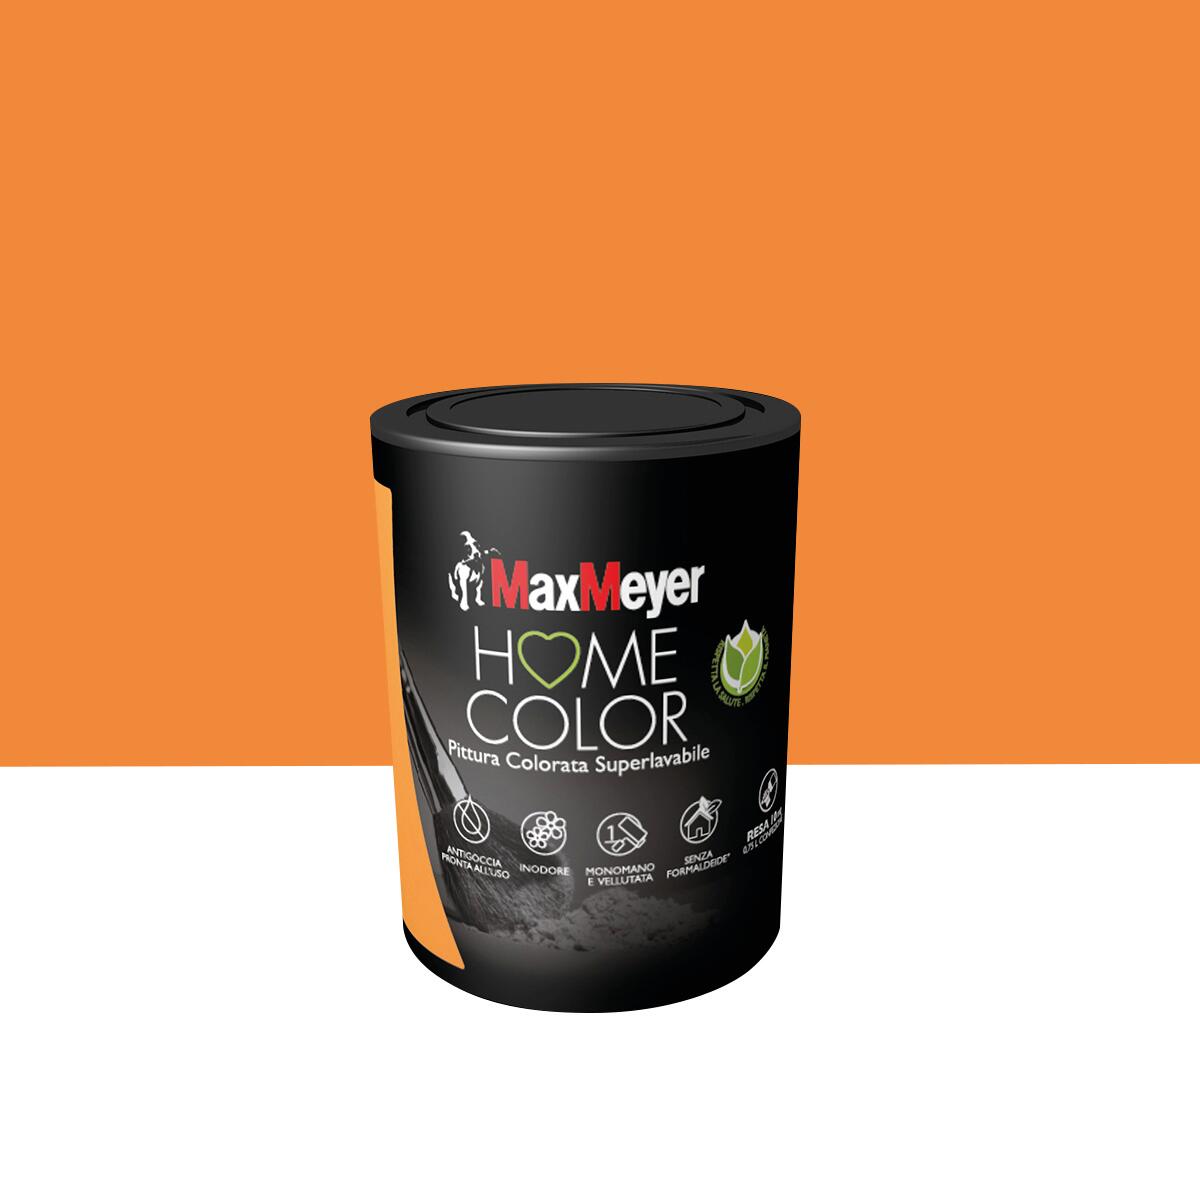 Pittura per interni super lavabile, MAXMEYER Home Color arancio seduzione  opaco, 0.75 L